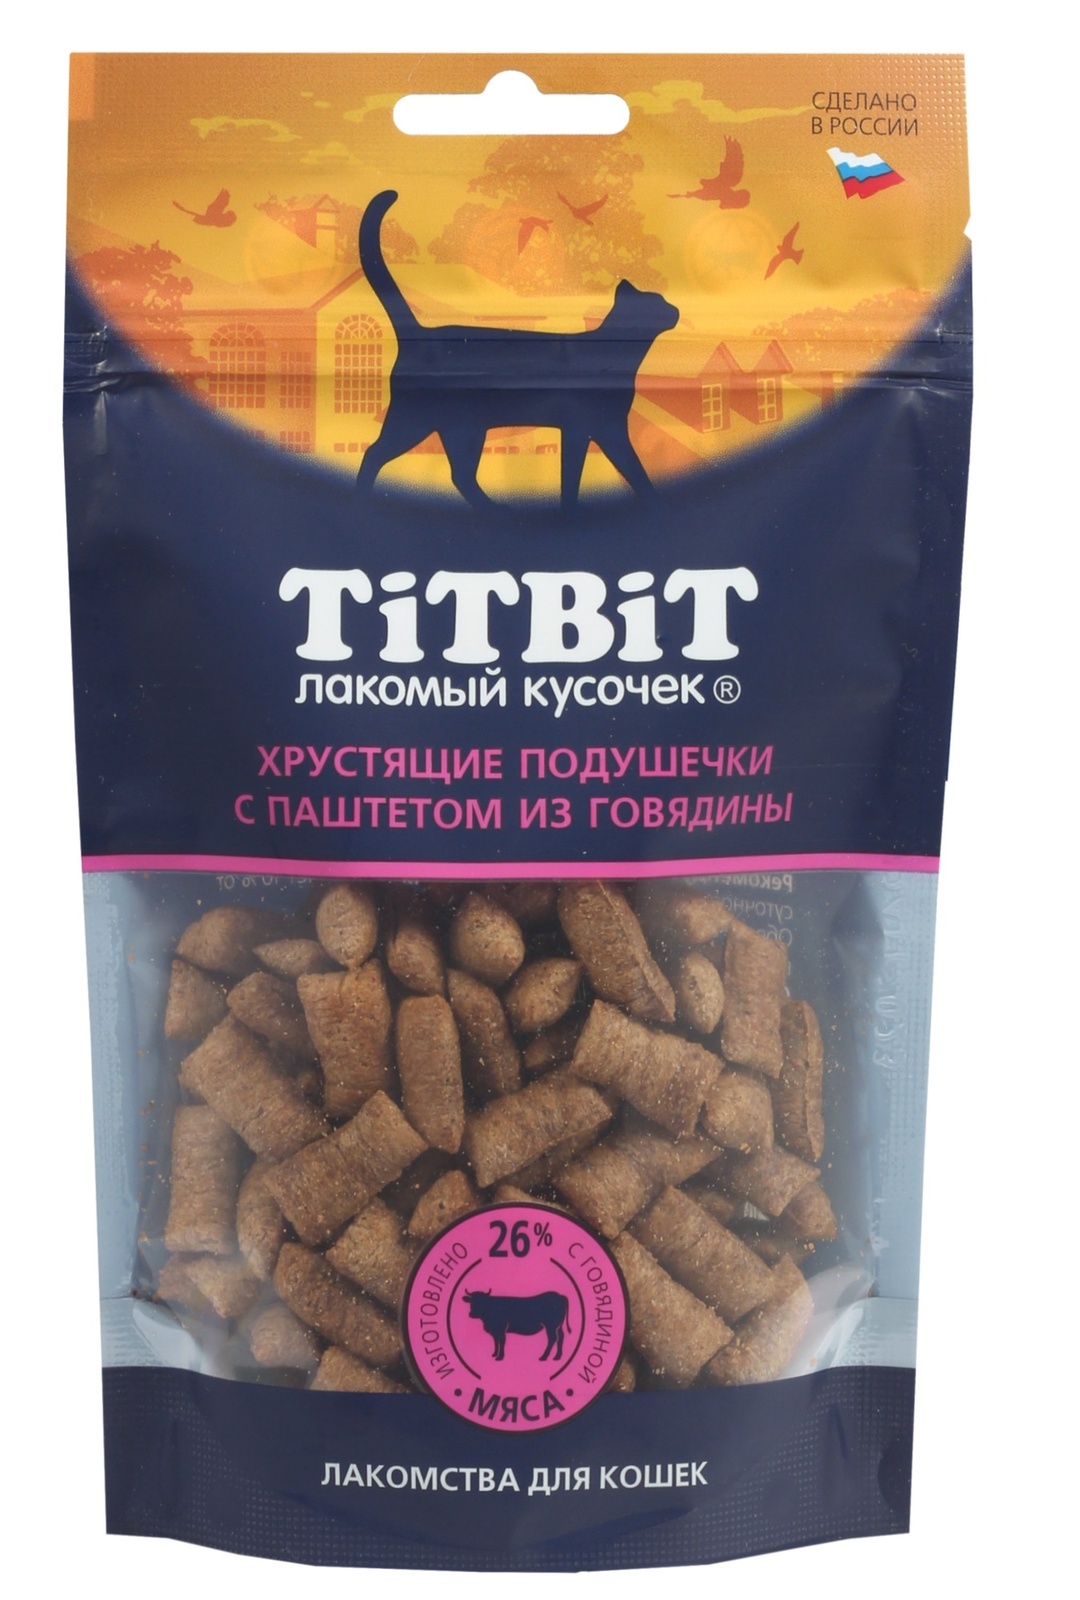 TiTBiT TiTBiT хрустящие подушечки для кошек с паштетом из говядины (60 г)